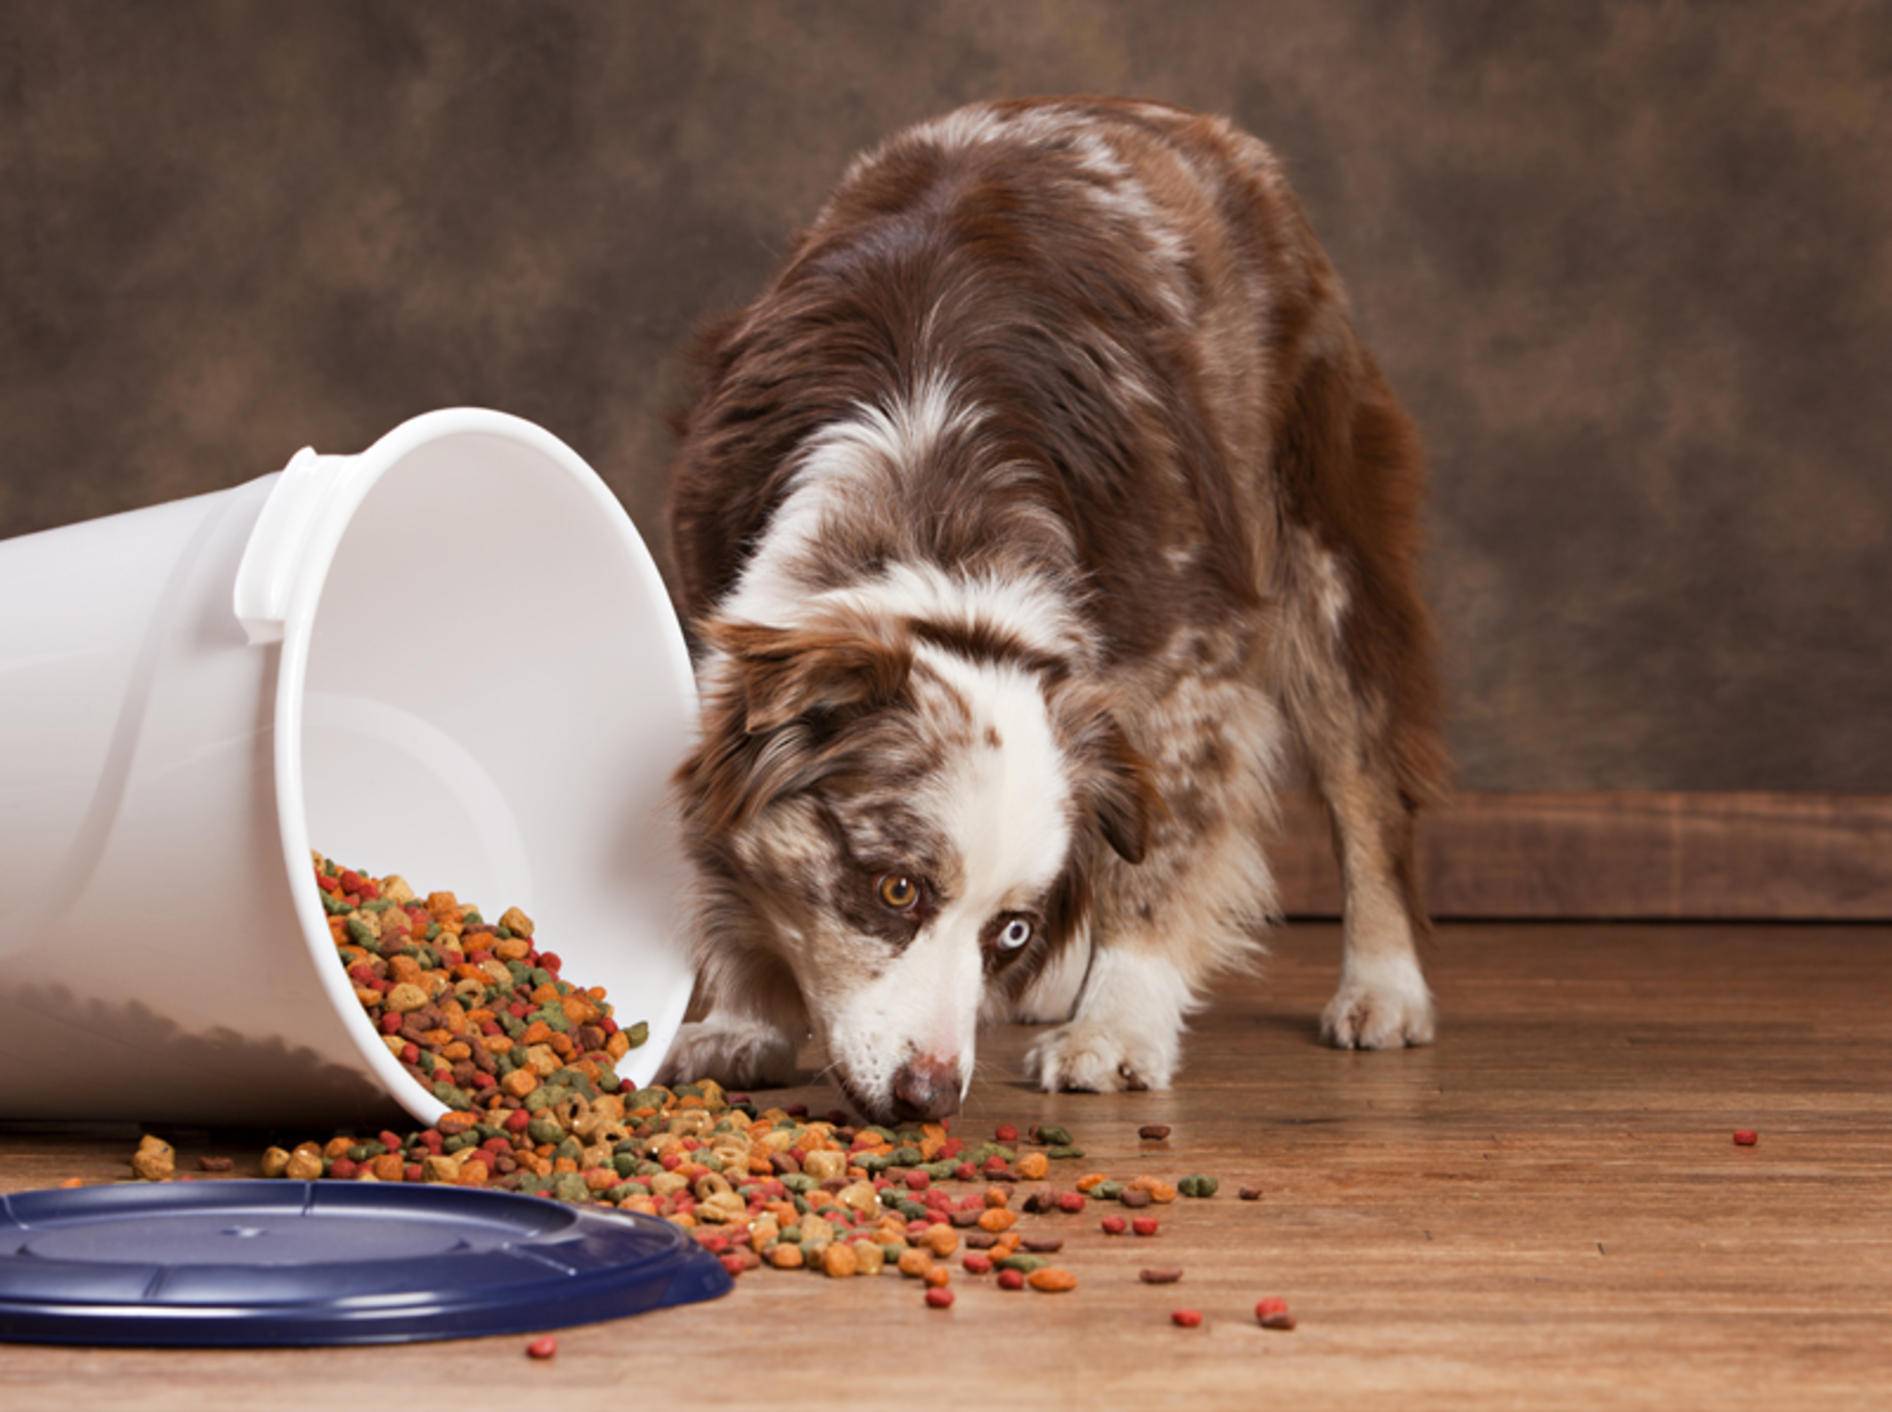 Knoblauch für Hunde – eine gute Idee? – Bild: Shutterstock / Michelle D. Milliman